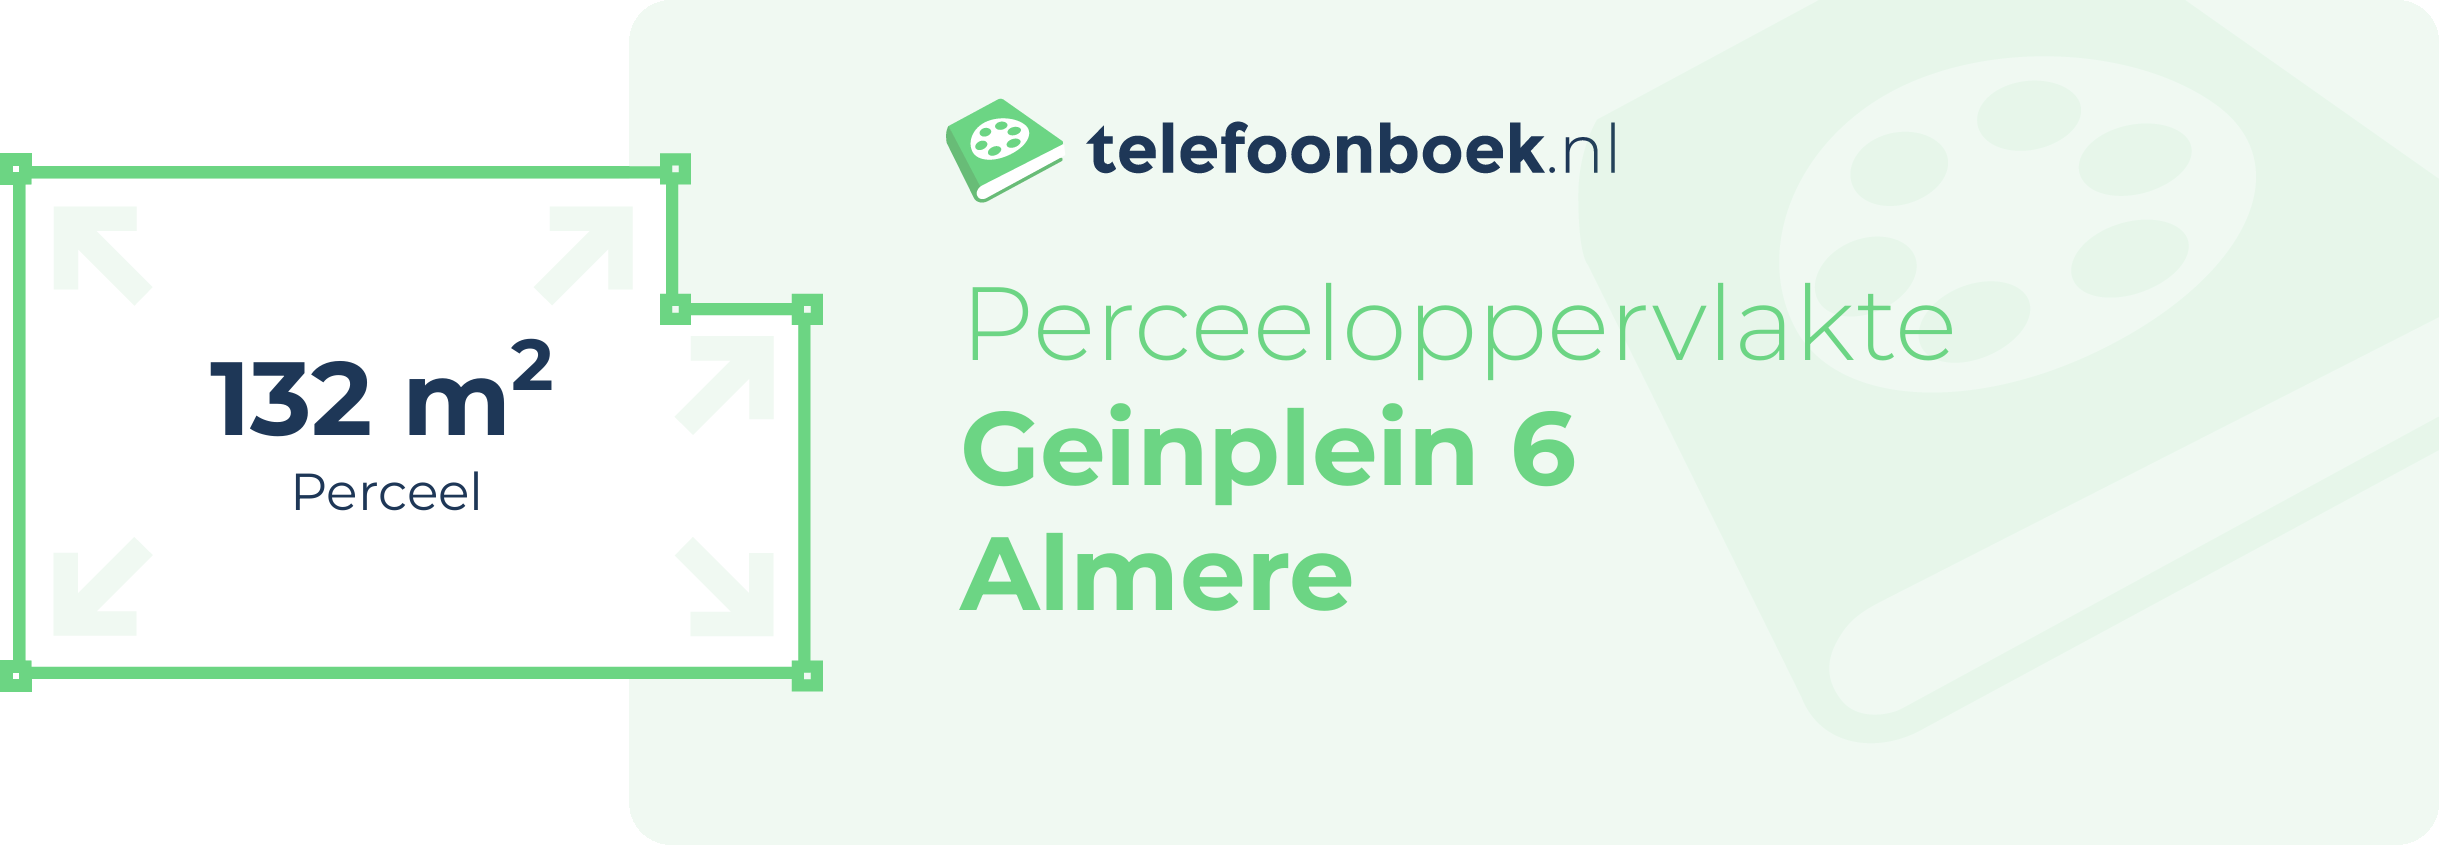 Perceeloppervlakte Geinplein 6 Almere